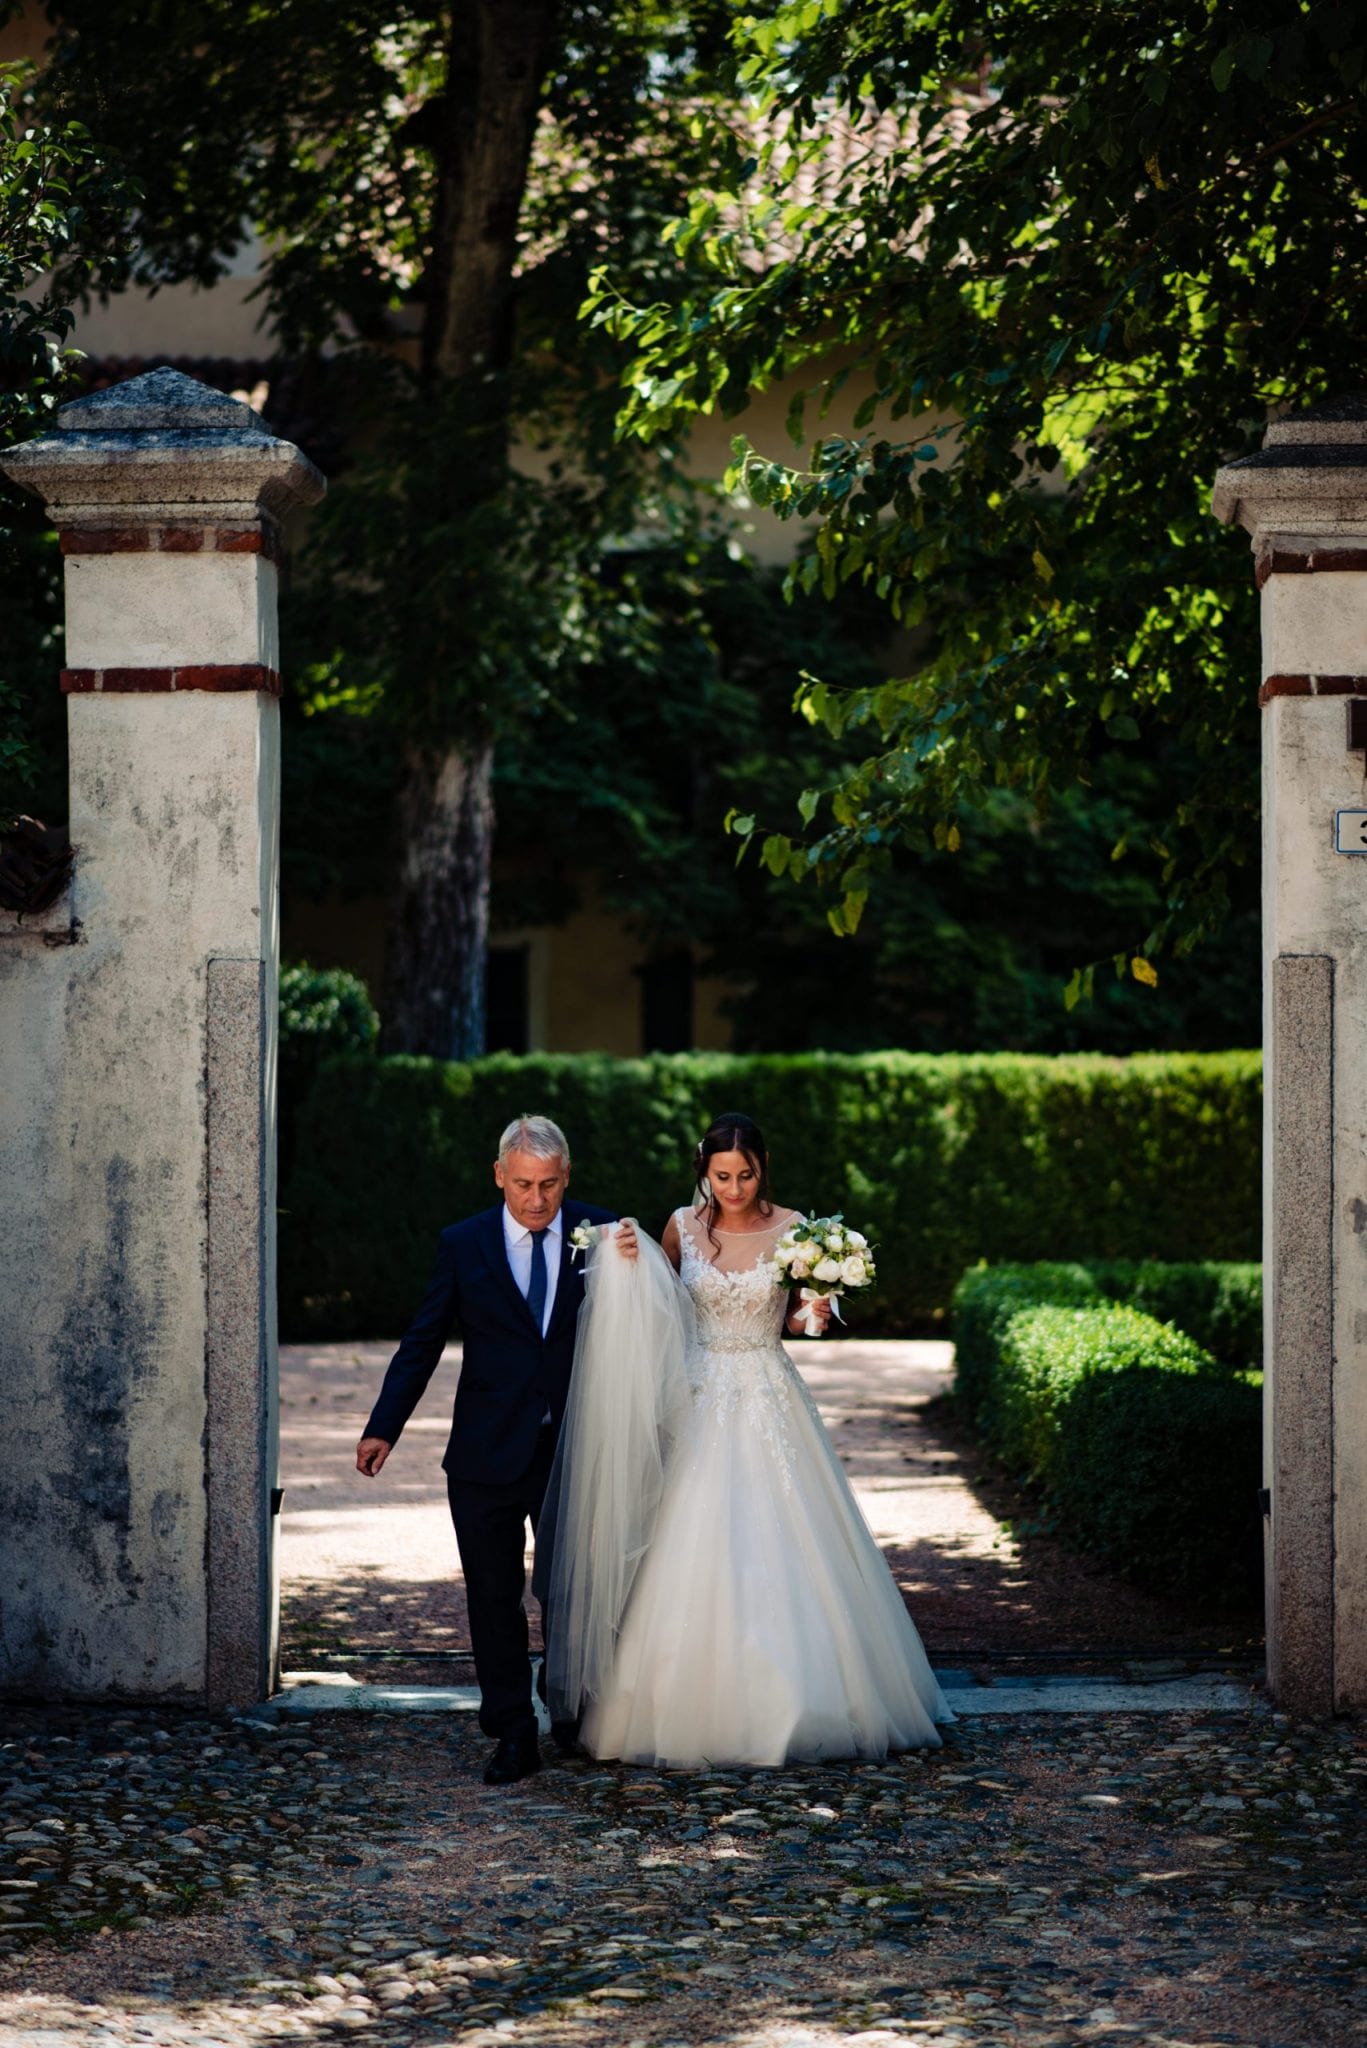 Fotografo Fotografia di Matrimonio Abbazia Santo Spirito Villa Giannone Cerimonia Nozze Arrivo Sposa